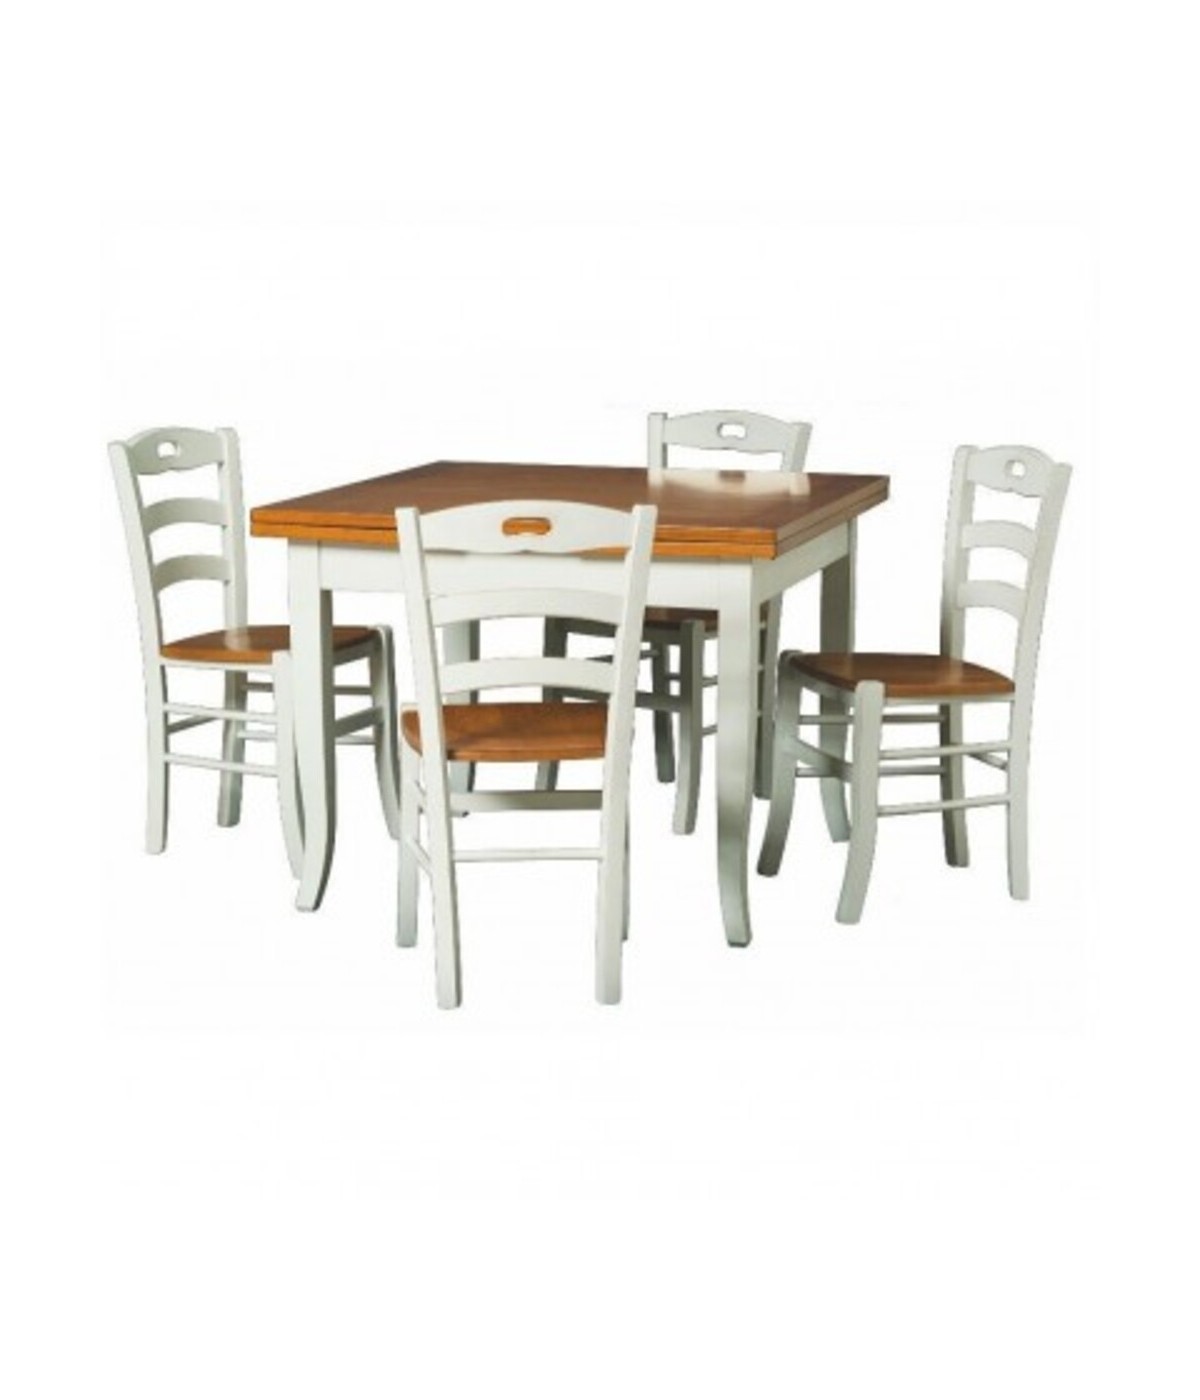 MOBILI 2G - Set tavolo legno 90x90 allungabile bicolore + 4 sedie l